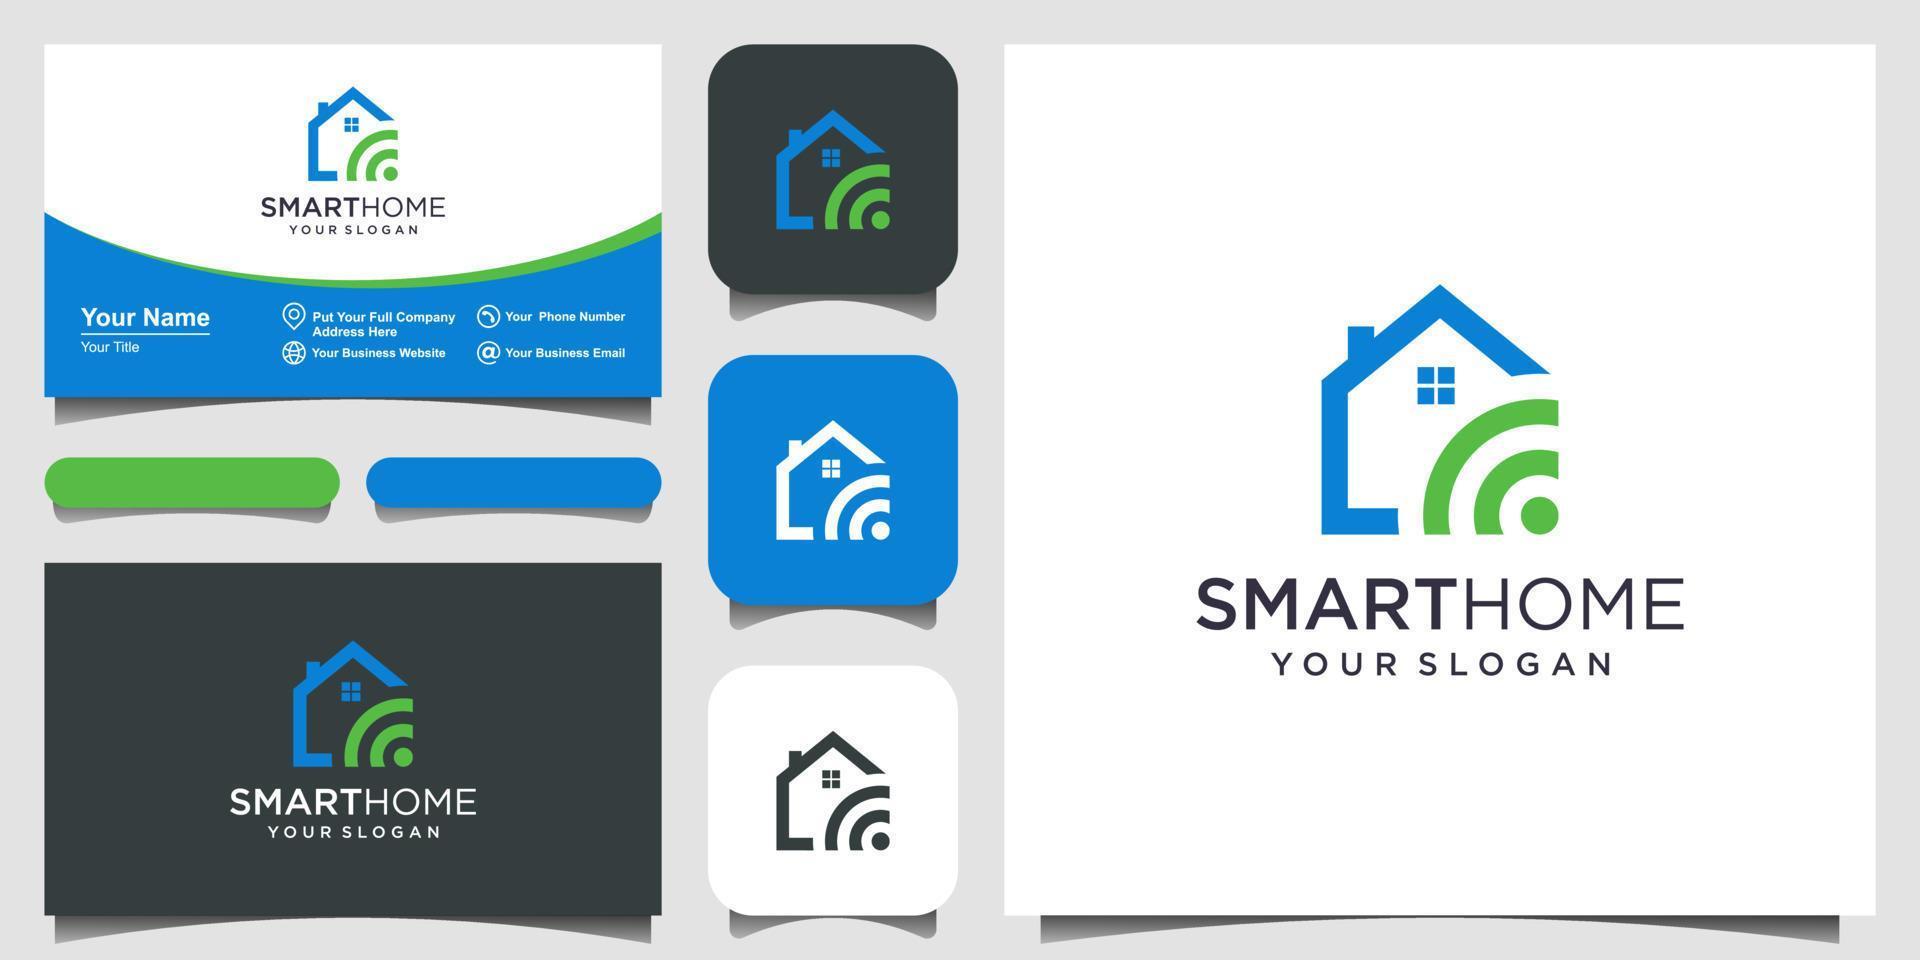 vecteur de logo de technologie de maison intelligente. création de logo, icône et carte de visite